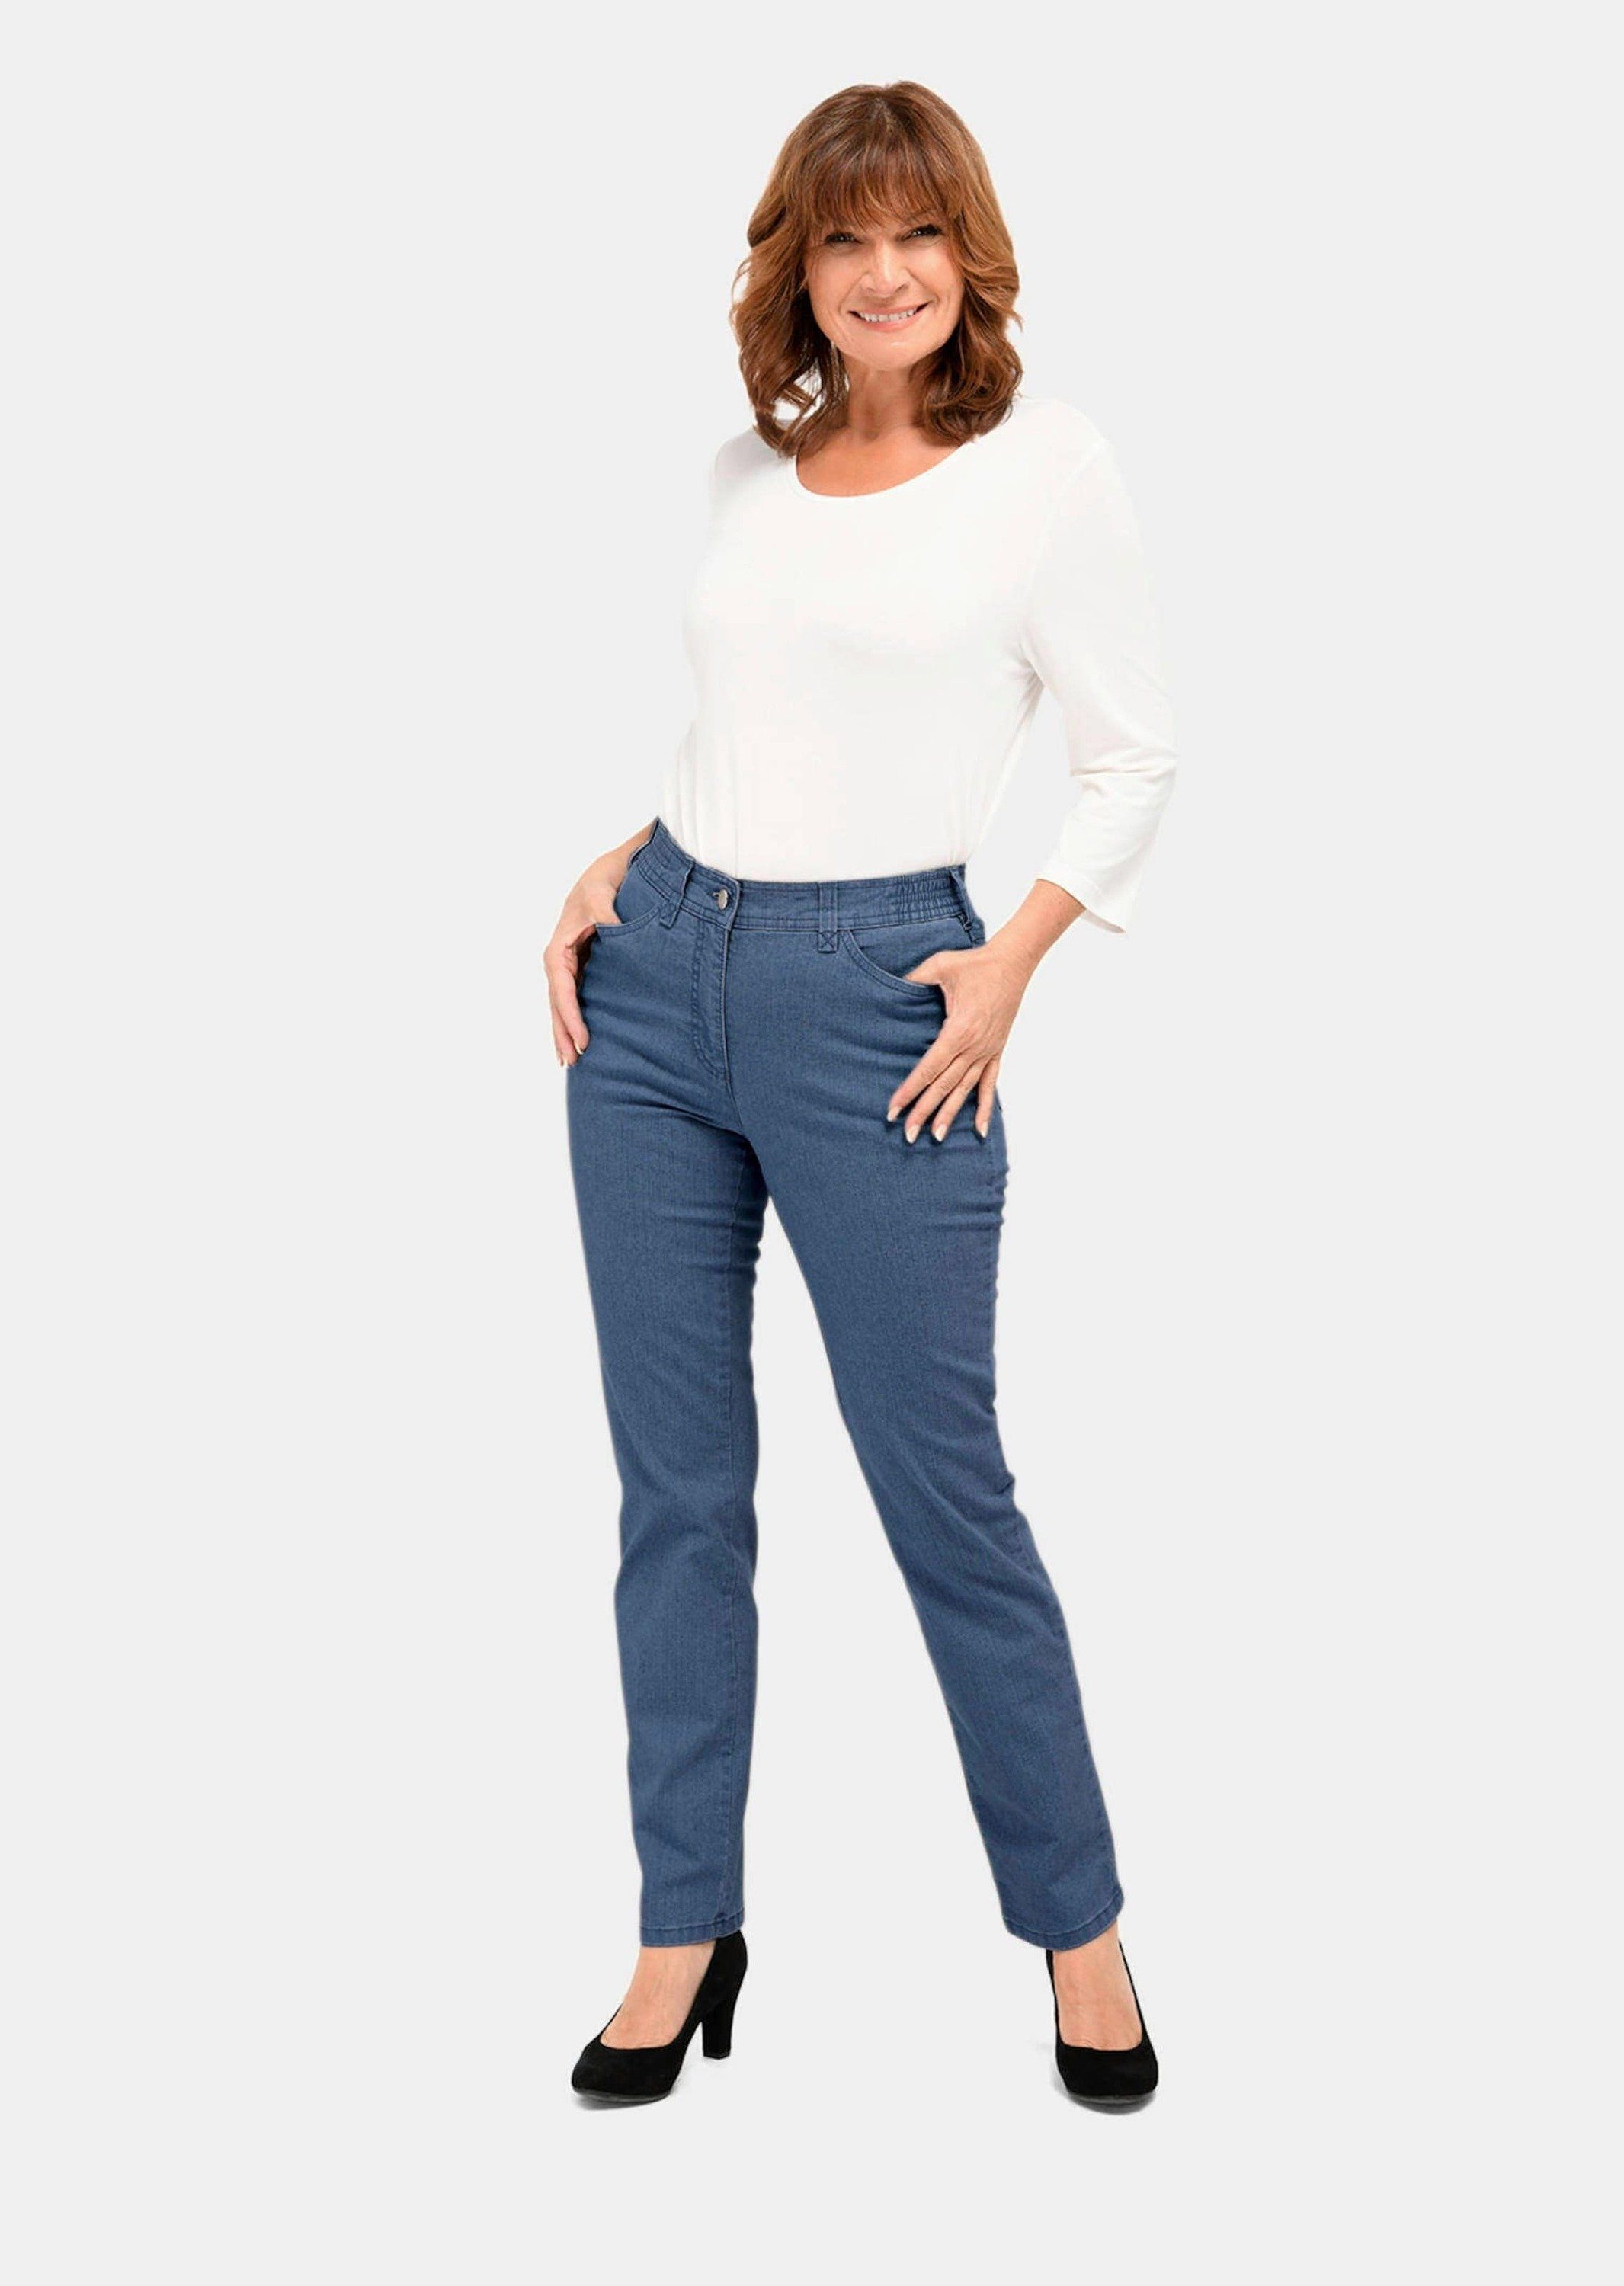 Jeanshose ANNA hellblau GOLDNER Klassische Bequeme Jeans Kurzgröße: